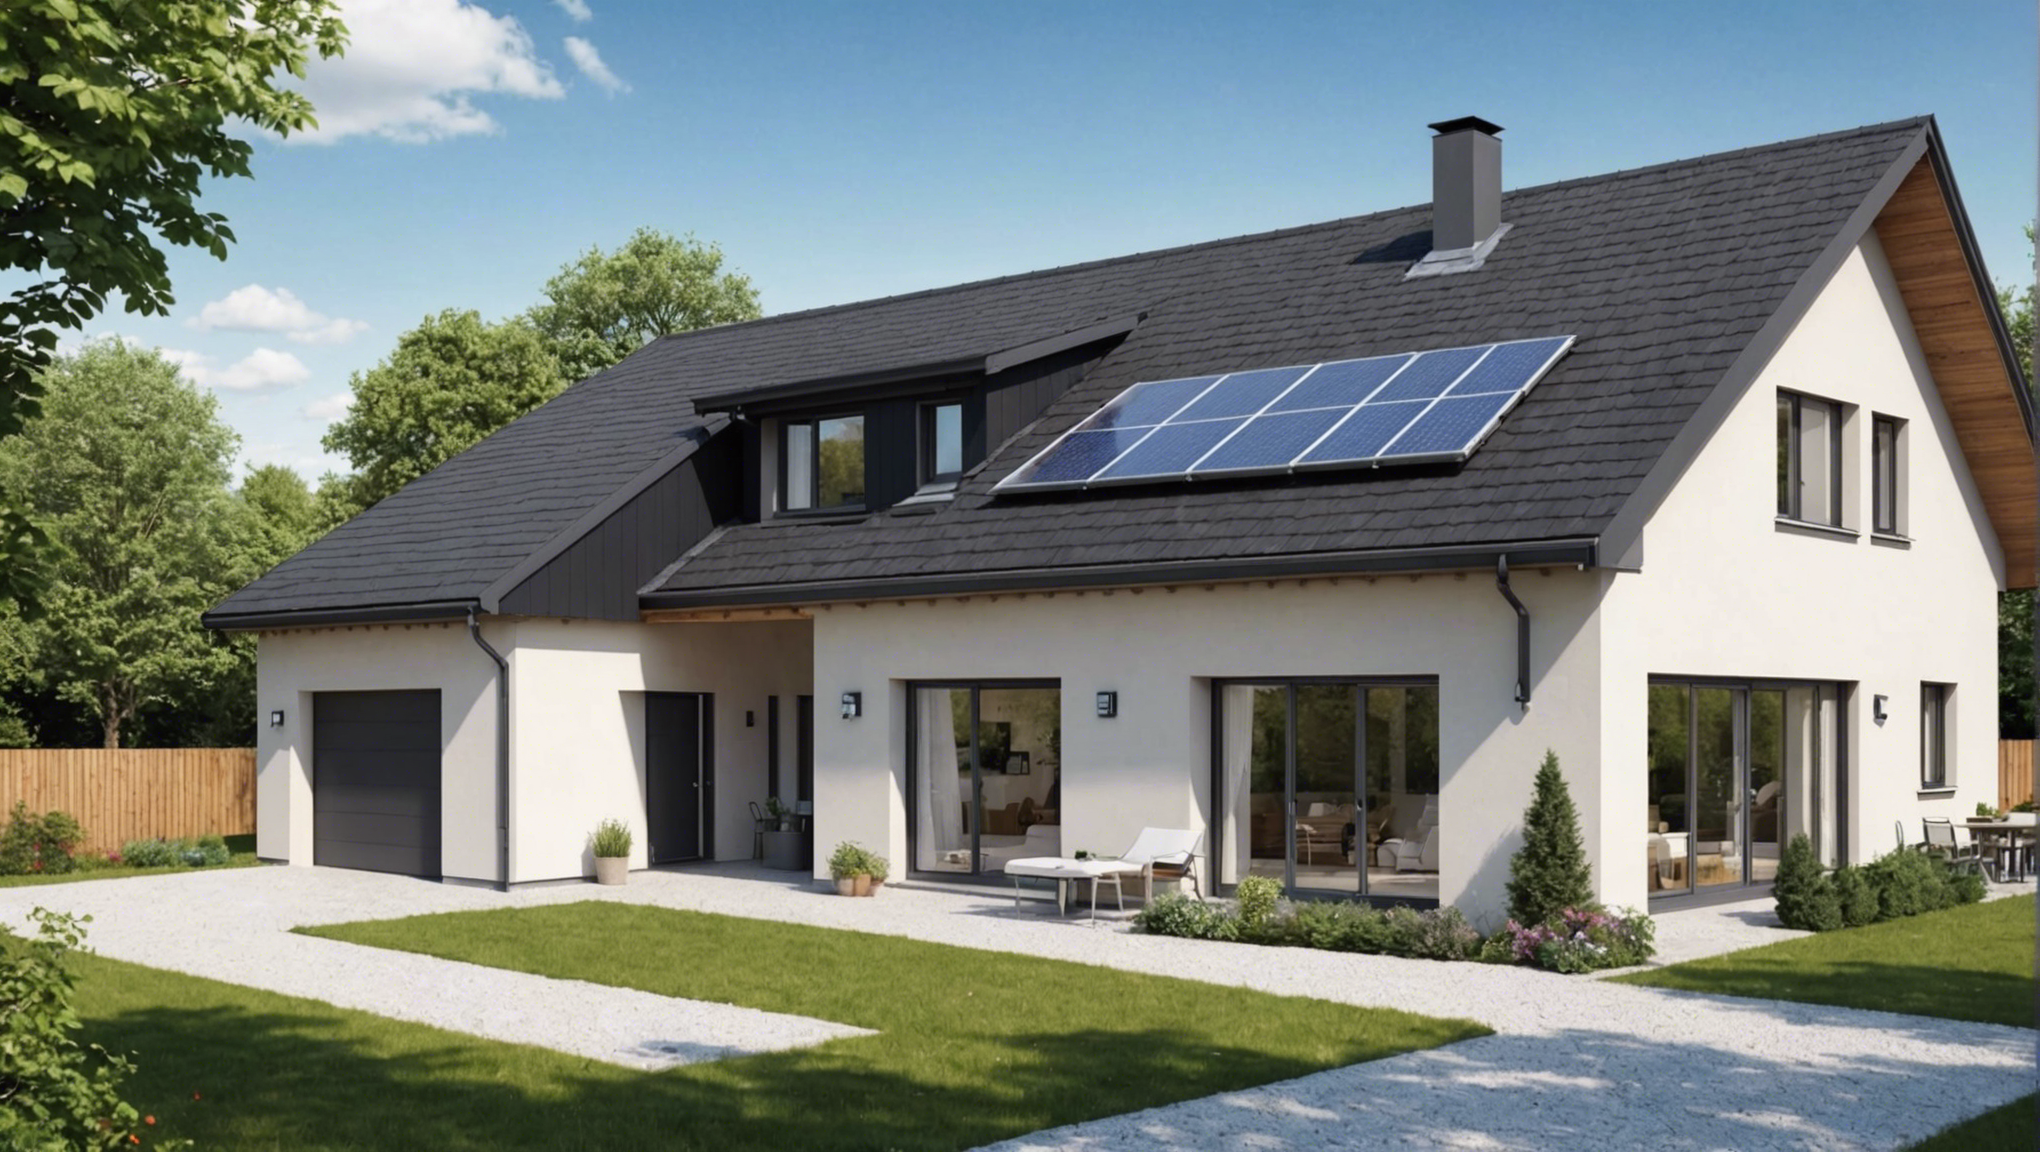 découvrez ce qu'est une maison passive et ses avantages. apprenez comment ce type de construction éco-responsable offre un confort d'habitation optimal et réduit la consommation énergétique.